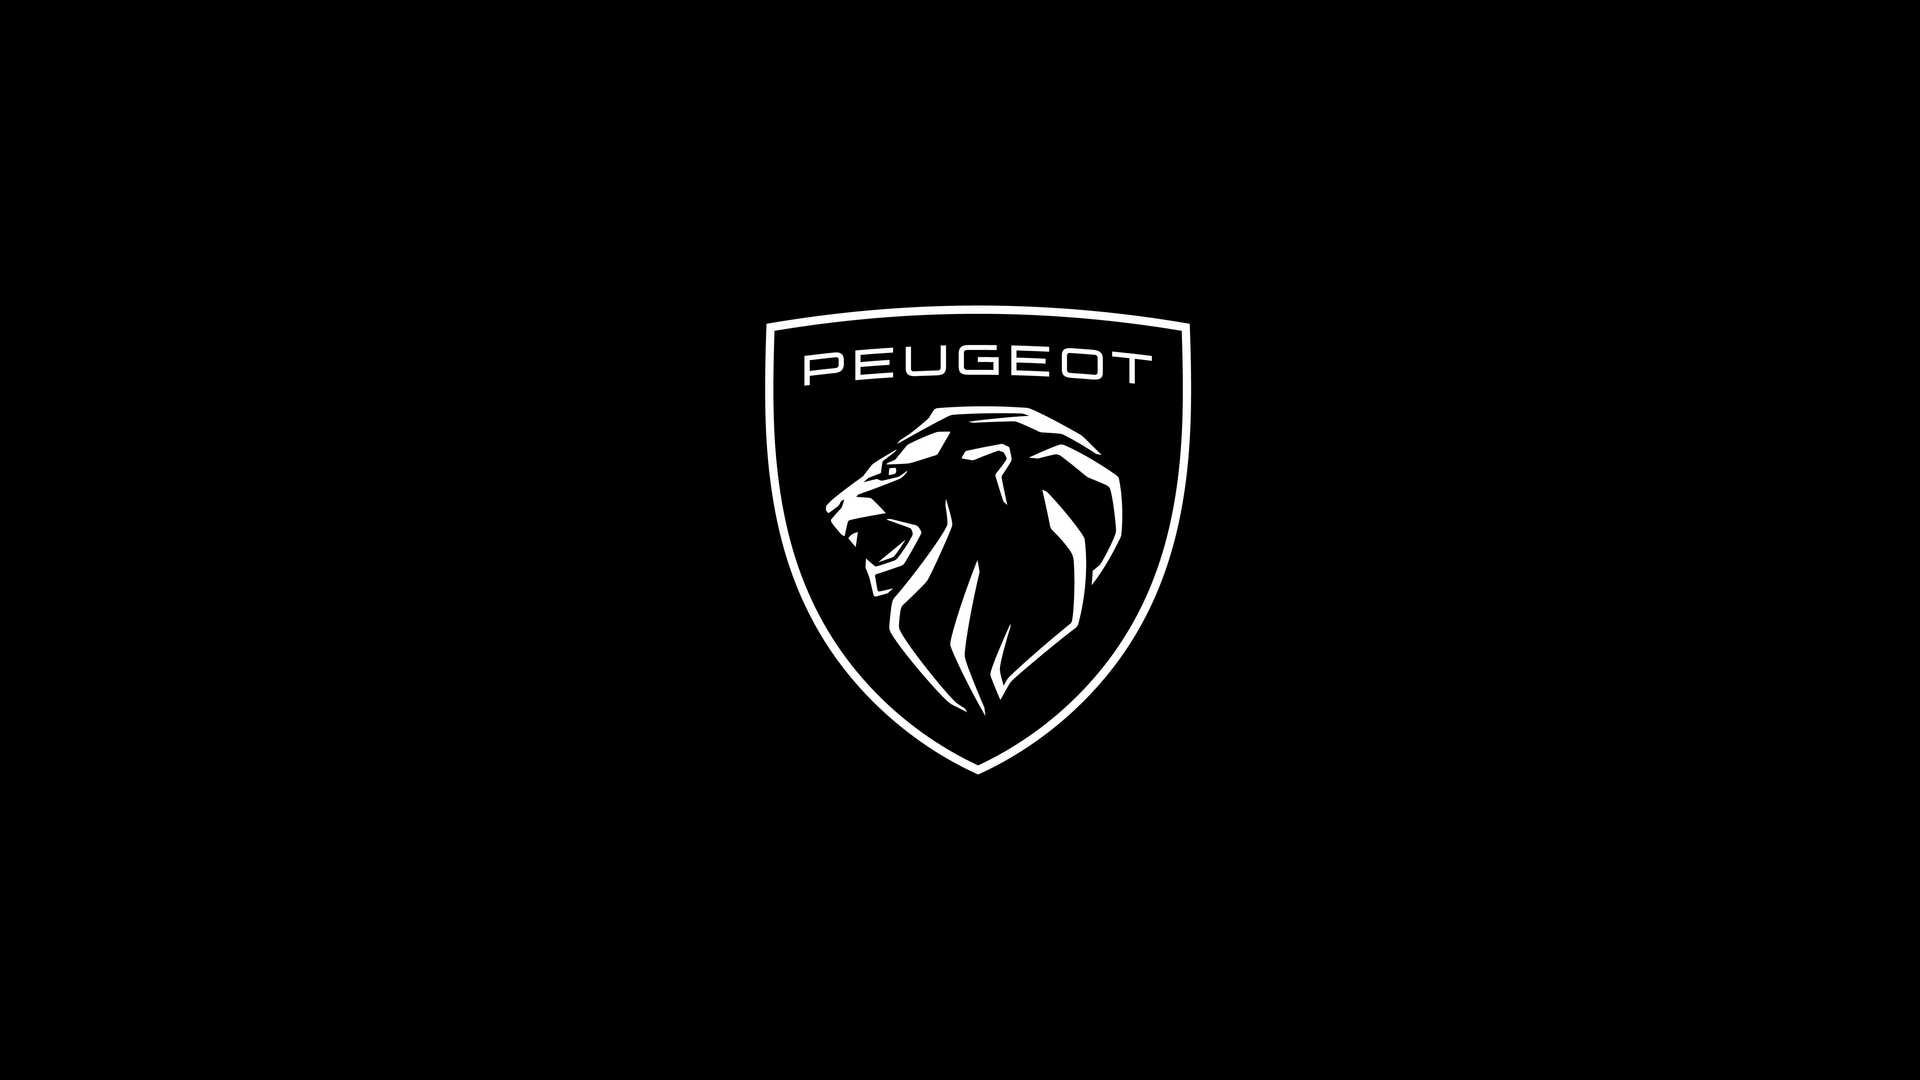  Cel mai vechi brand auto are un logo nou. Începutul unei noi ere pentru Peugeot